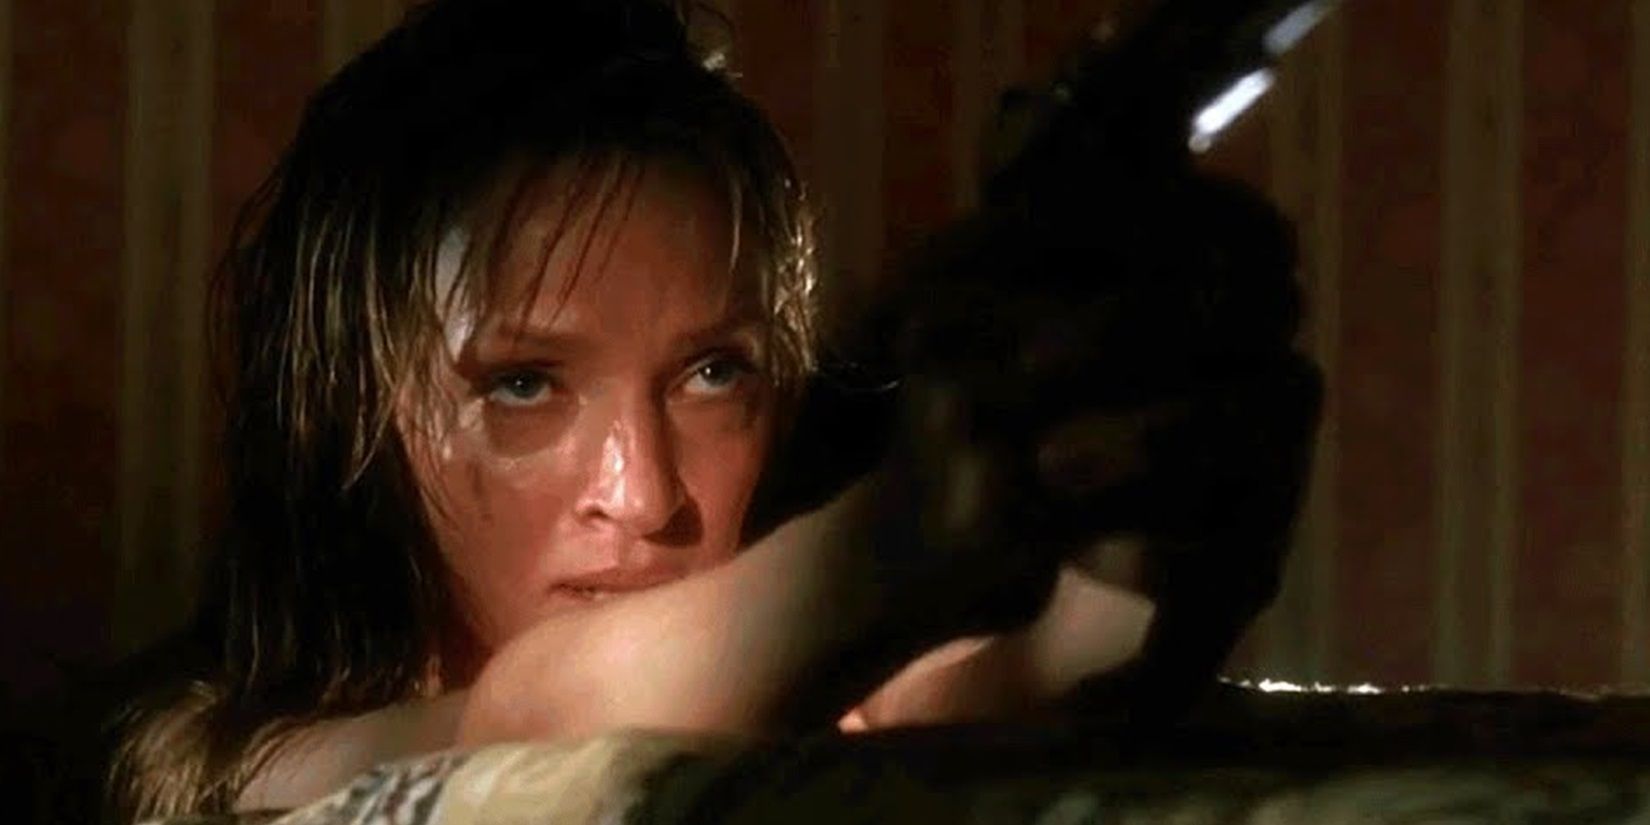 The Bride with a gun in a hotel room in Kill Bill